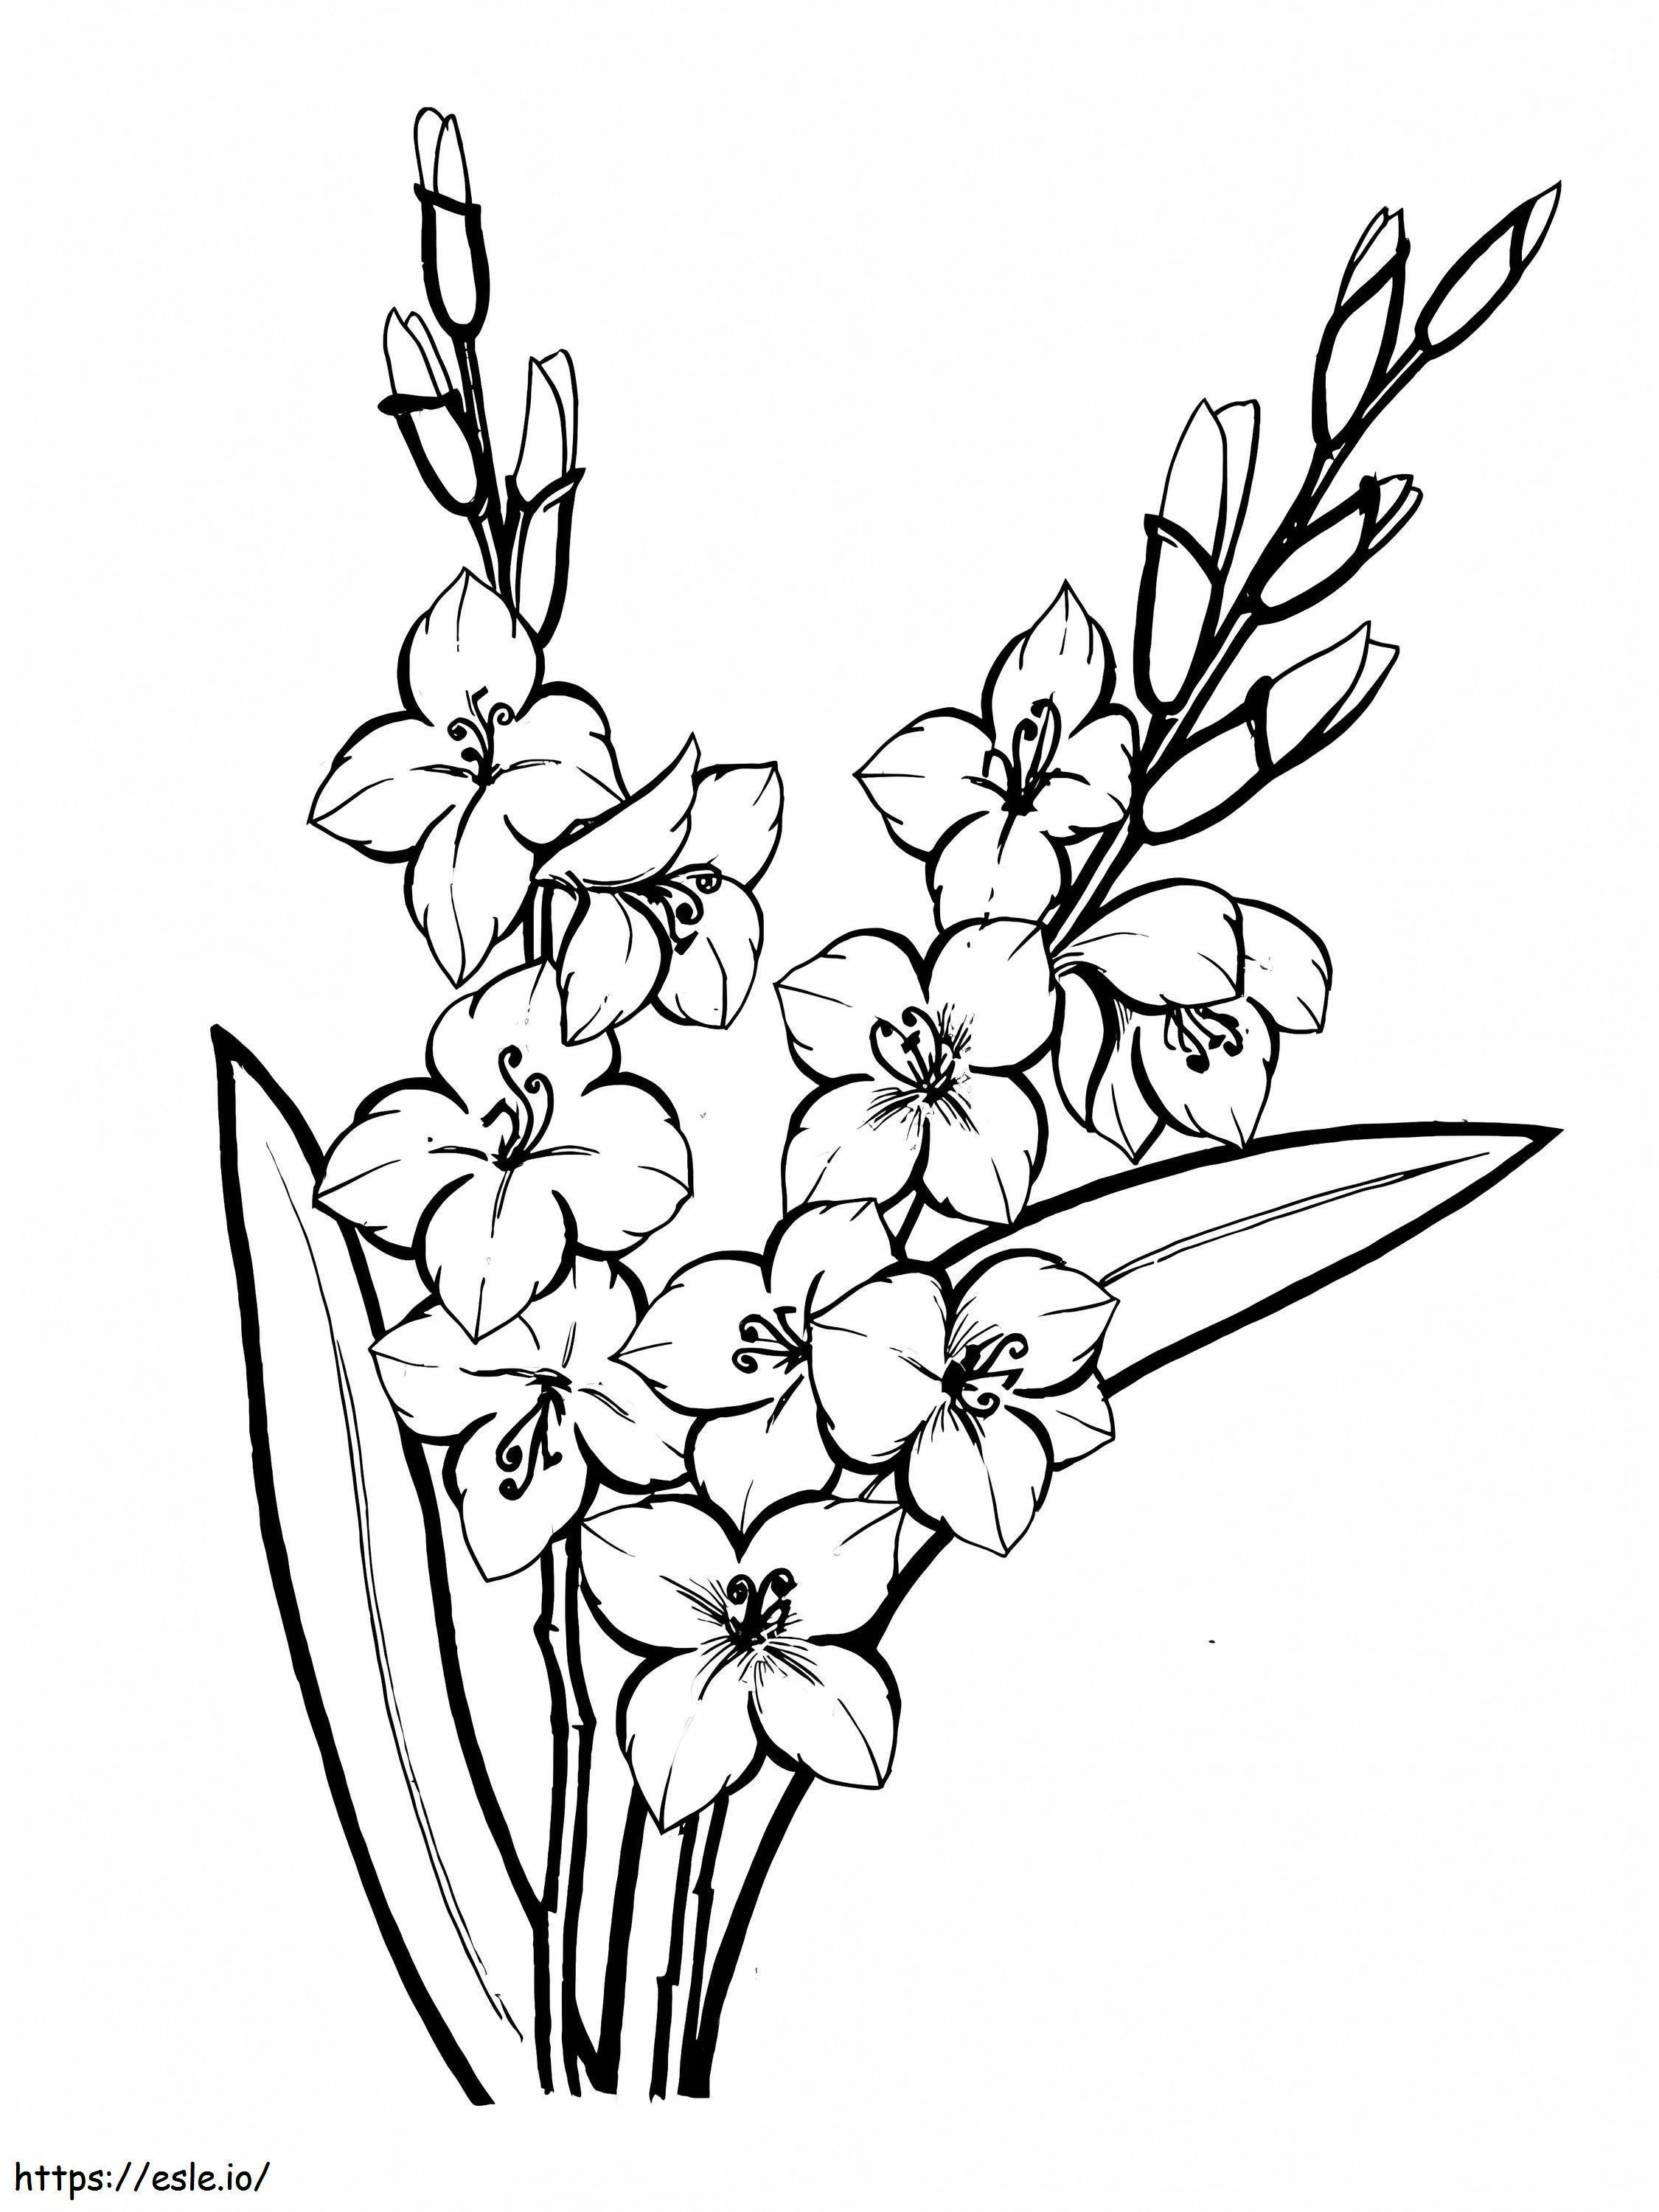 Gladiolenblüten 5 ausmalbilder